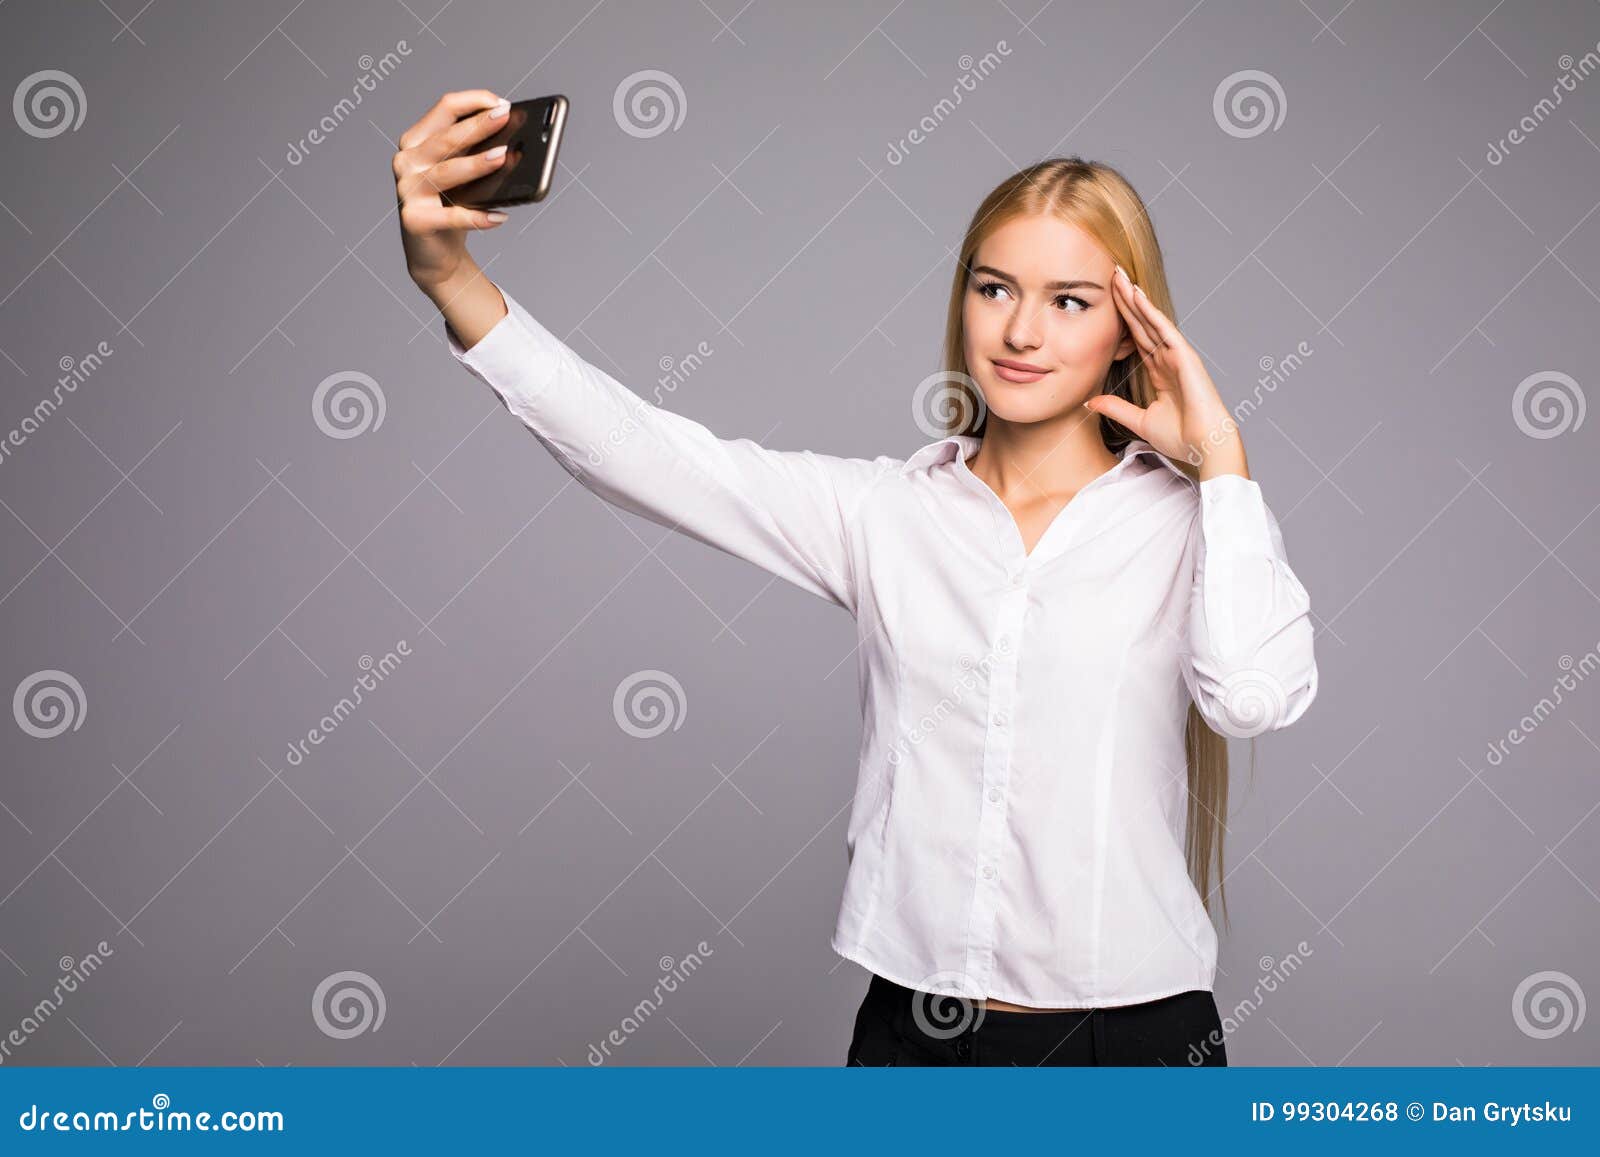 白色背景中站立使用手机的可爱女孩 库存图片. 图片 包括有 移动, 商业, 查出, 聚会所, 现有量, 阿帕卢萨马 - 224041193